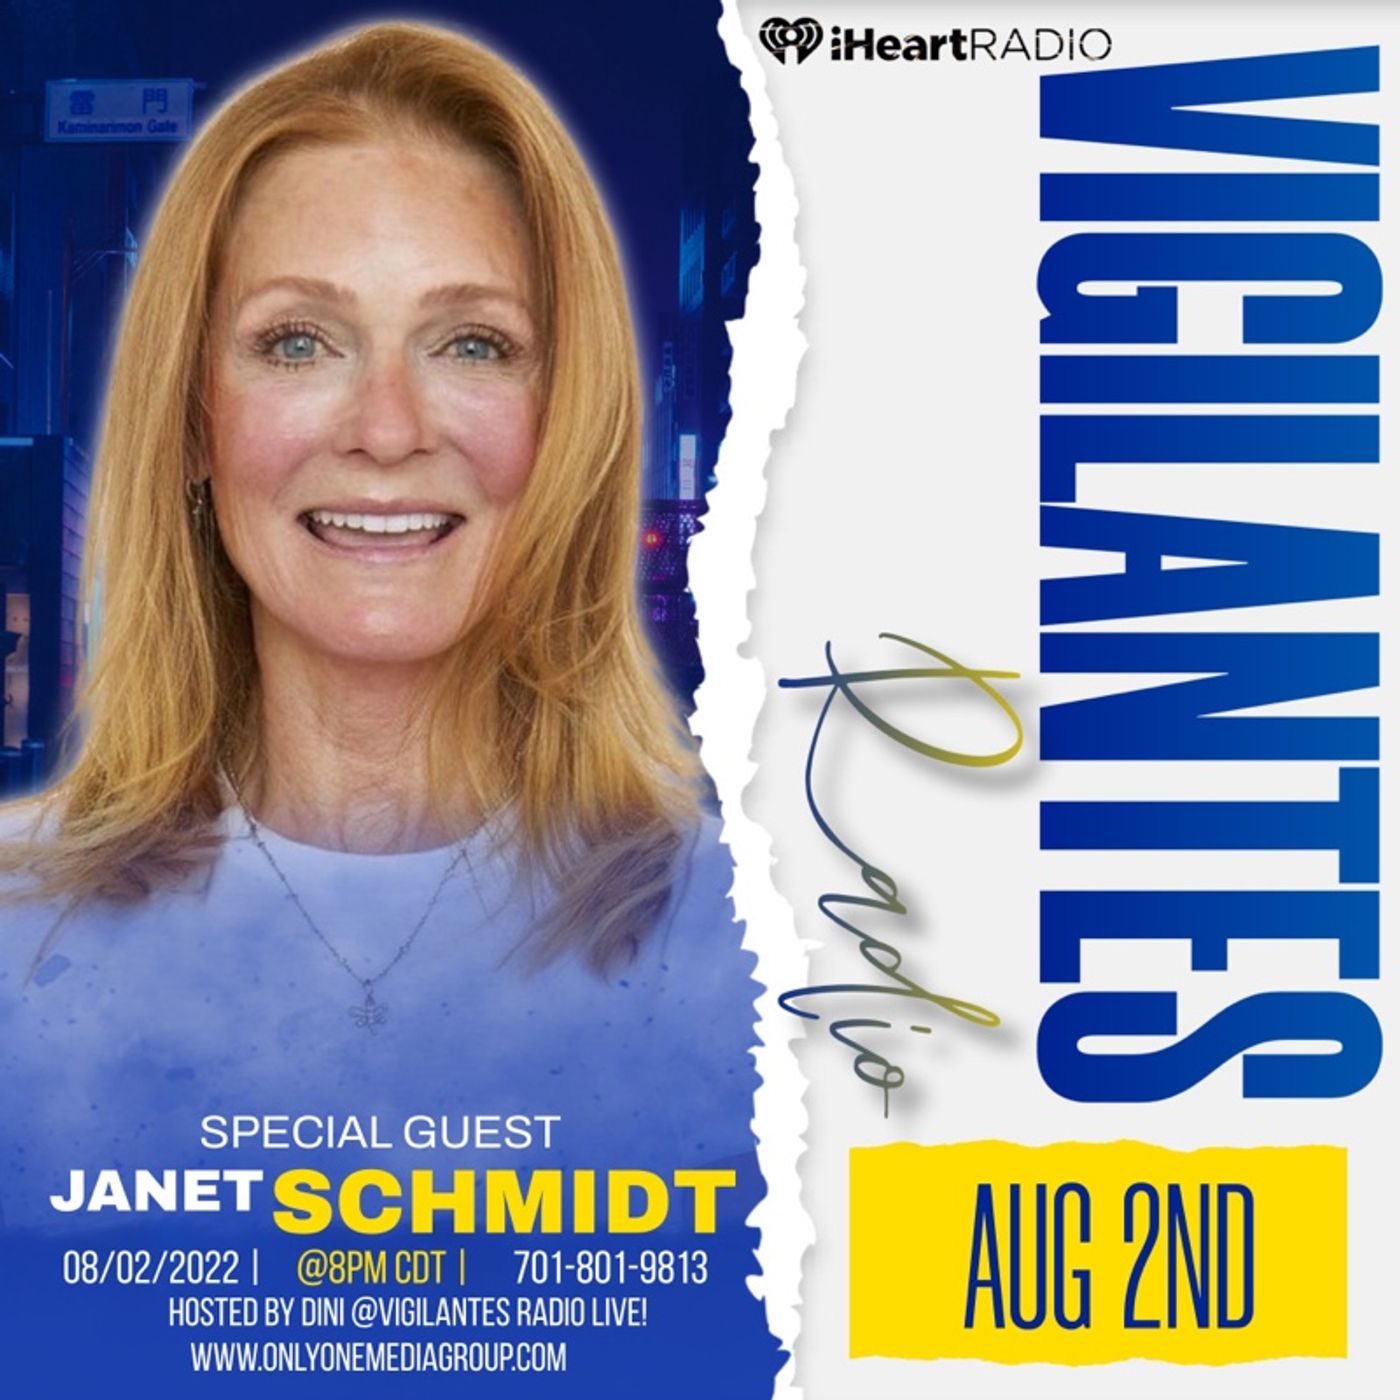 The Janet Schmidt Interview.